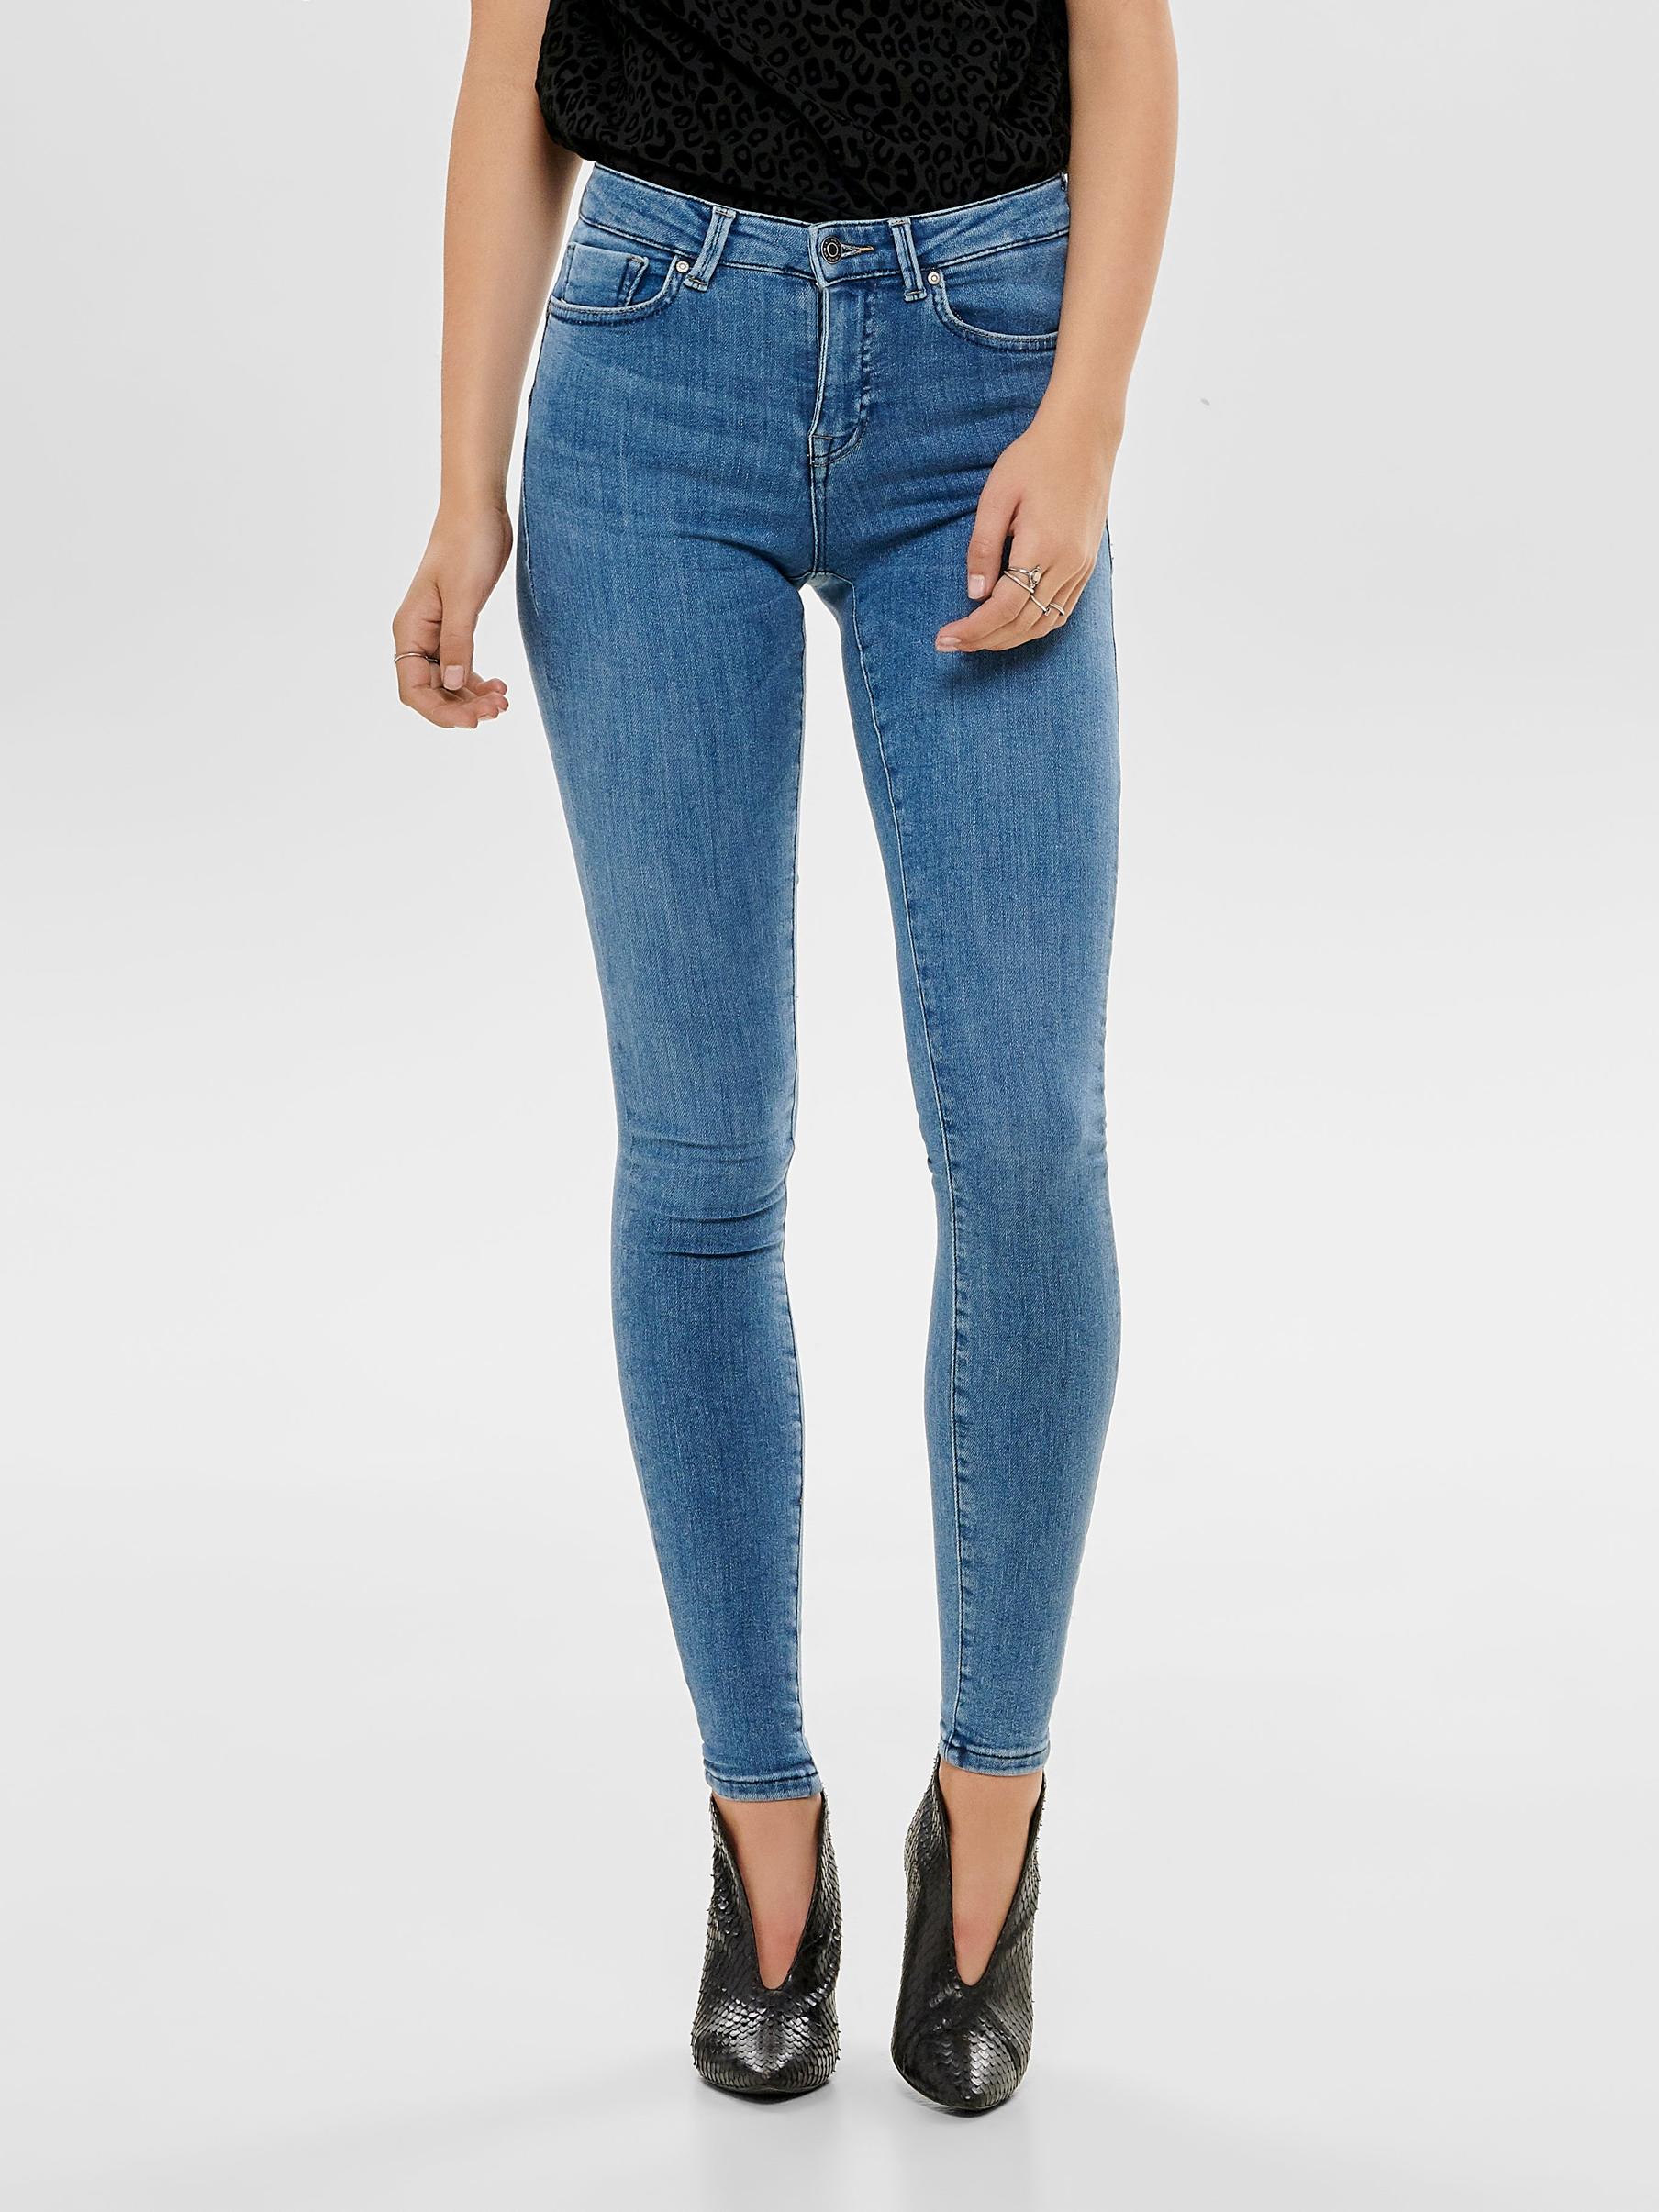 Oferta de ONLPower mid push up Jeans skinny fit por 39,99€ en ONLY